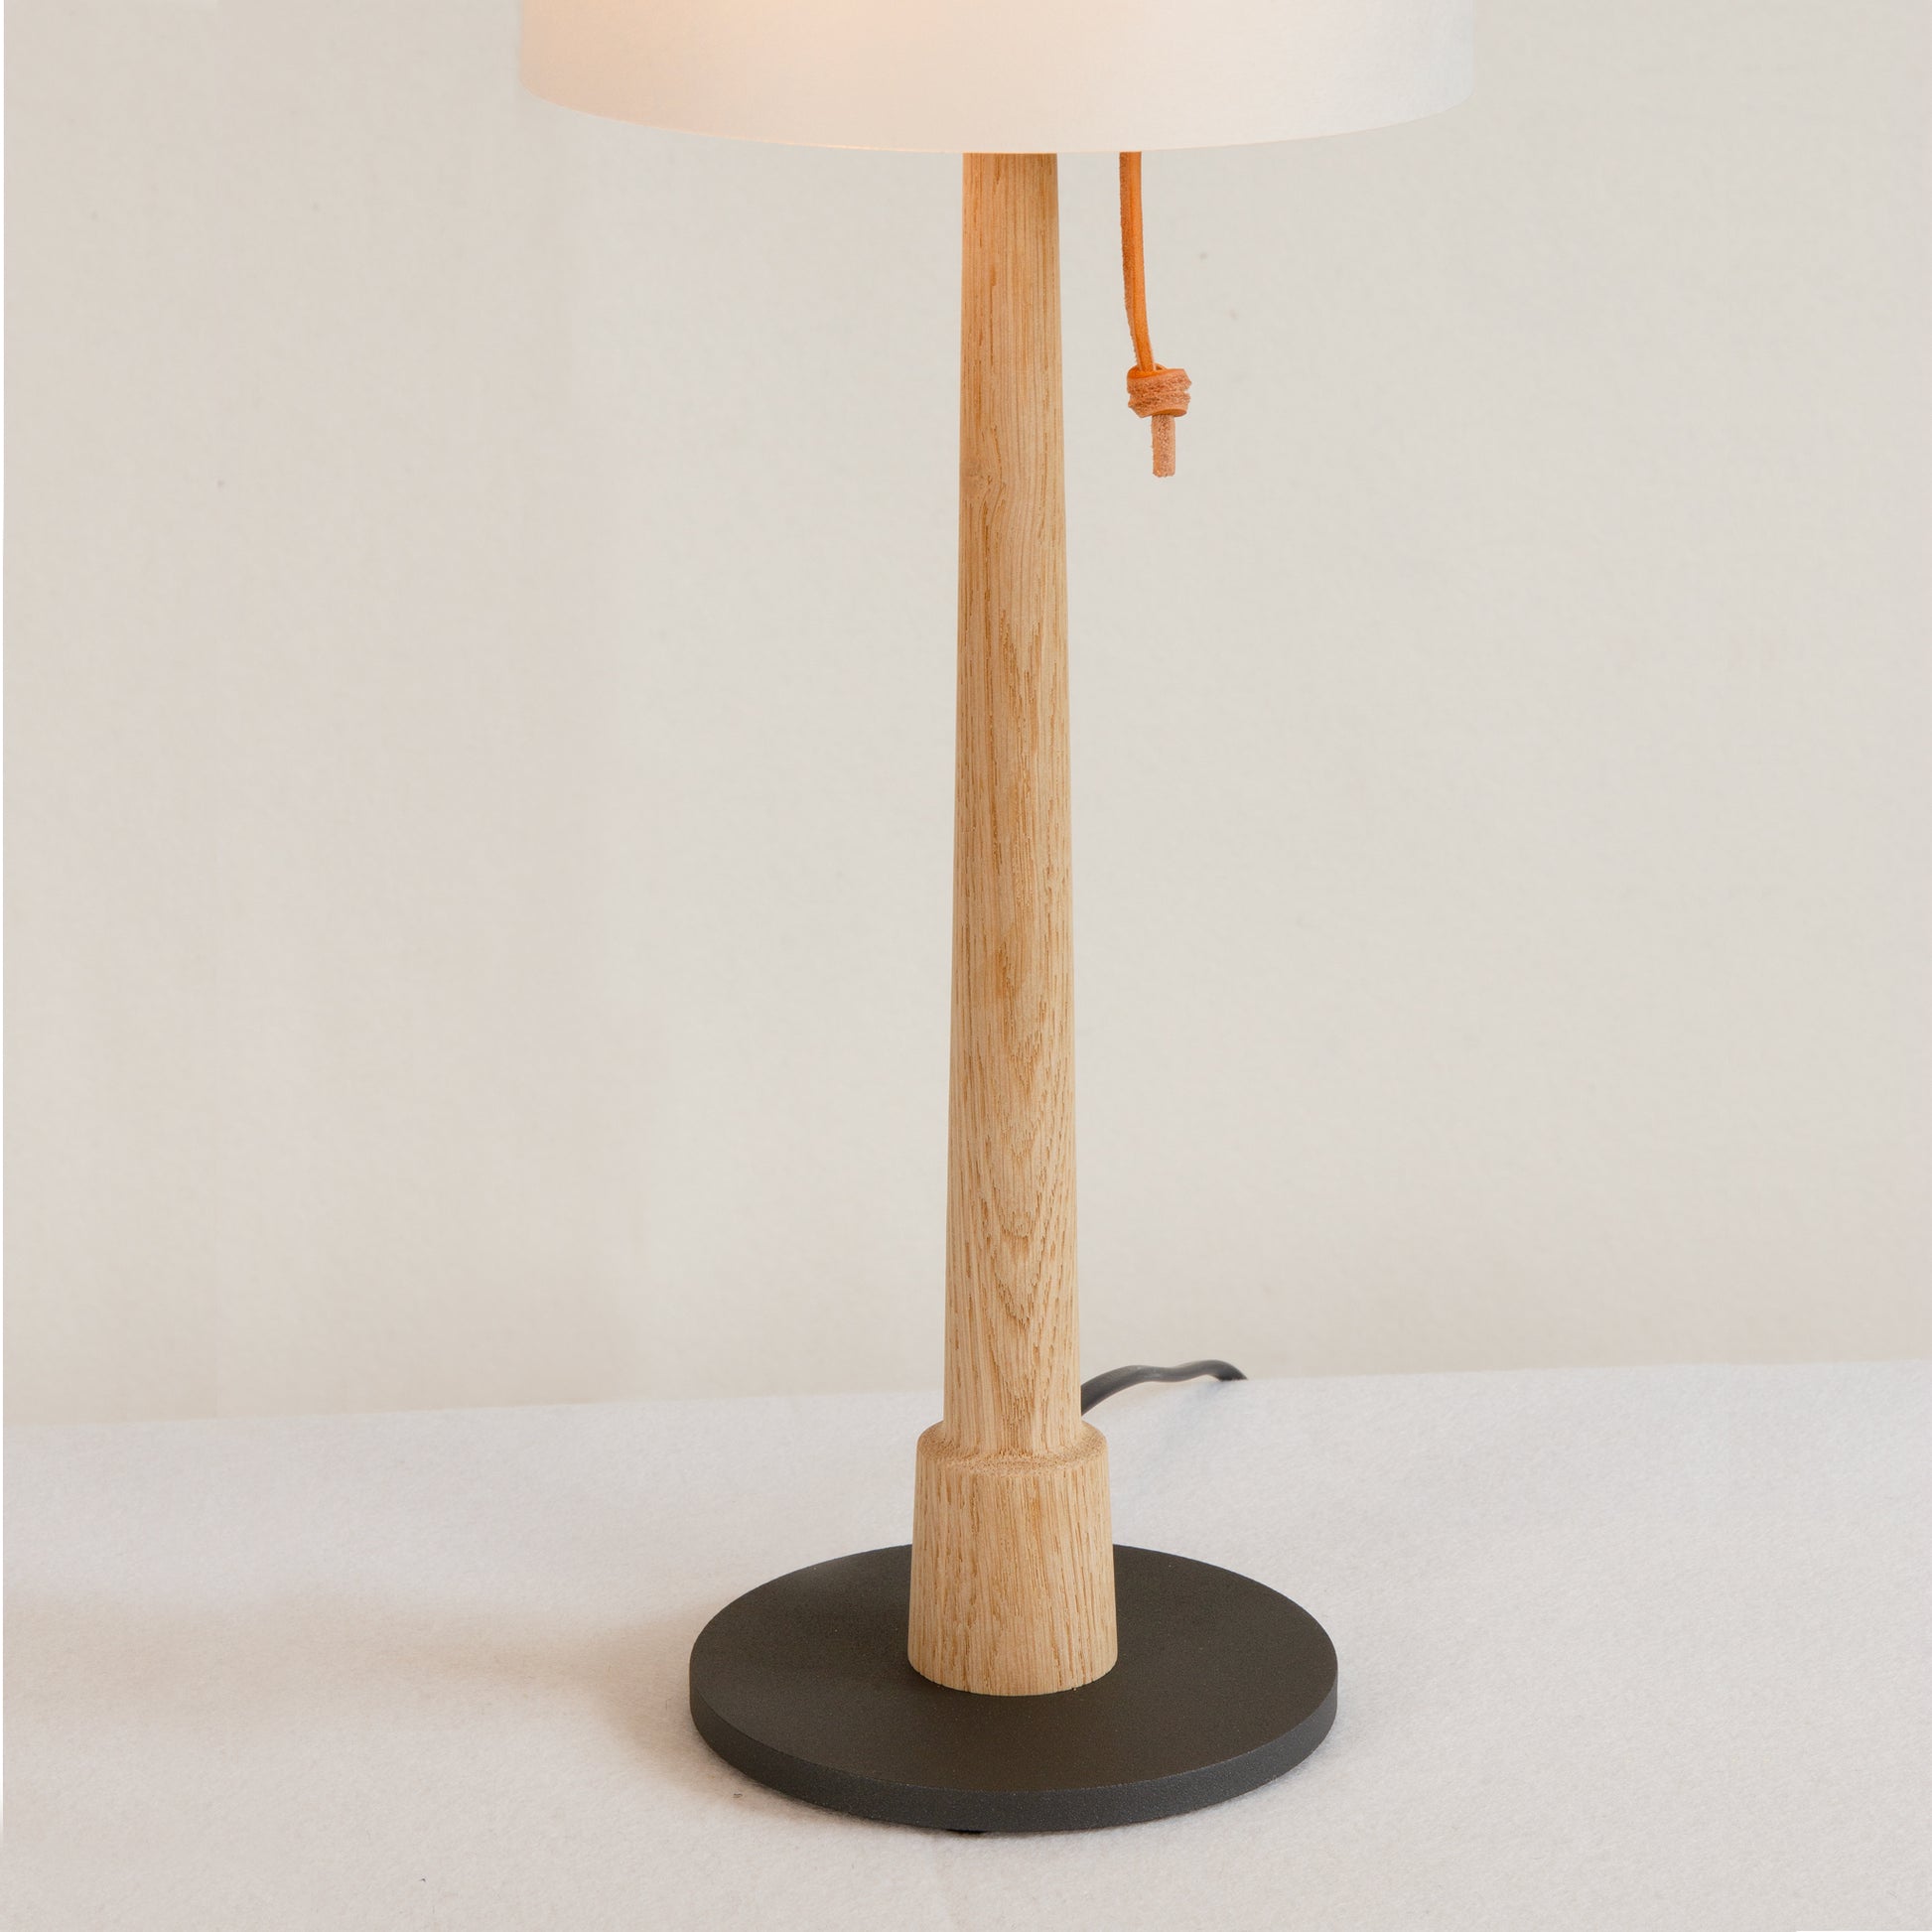 Gadd bordslampa med stativ i ek, närbild